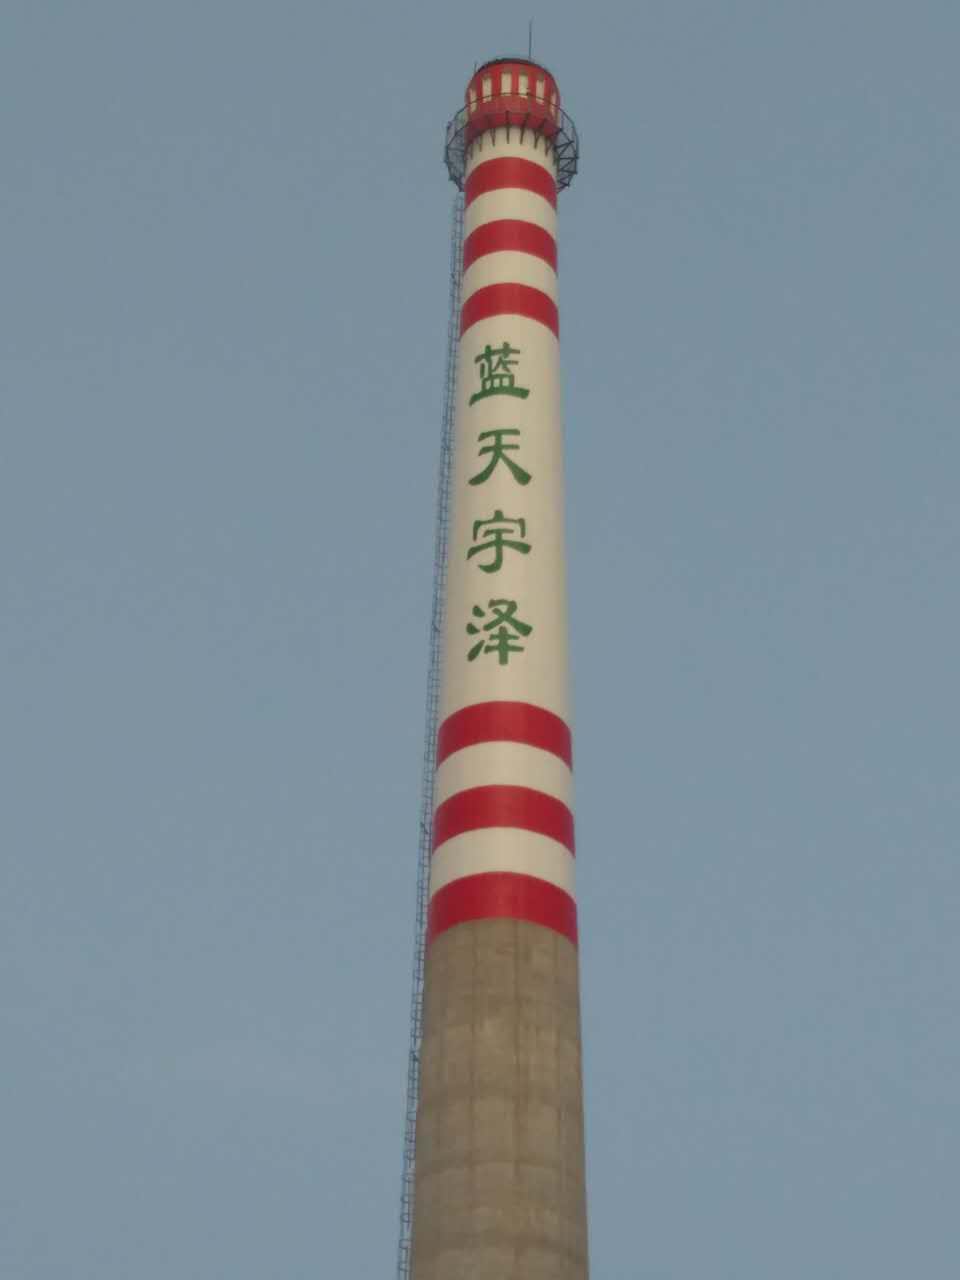 滨州烟囱制作安装检查平台公司富强民主